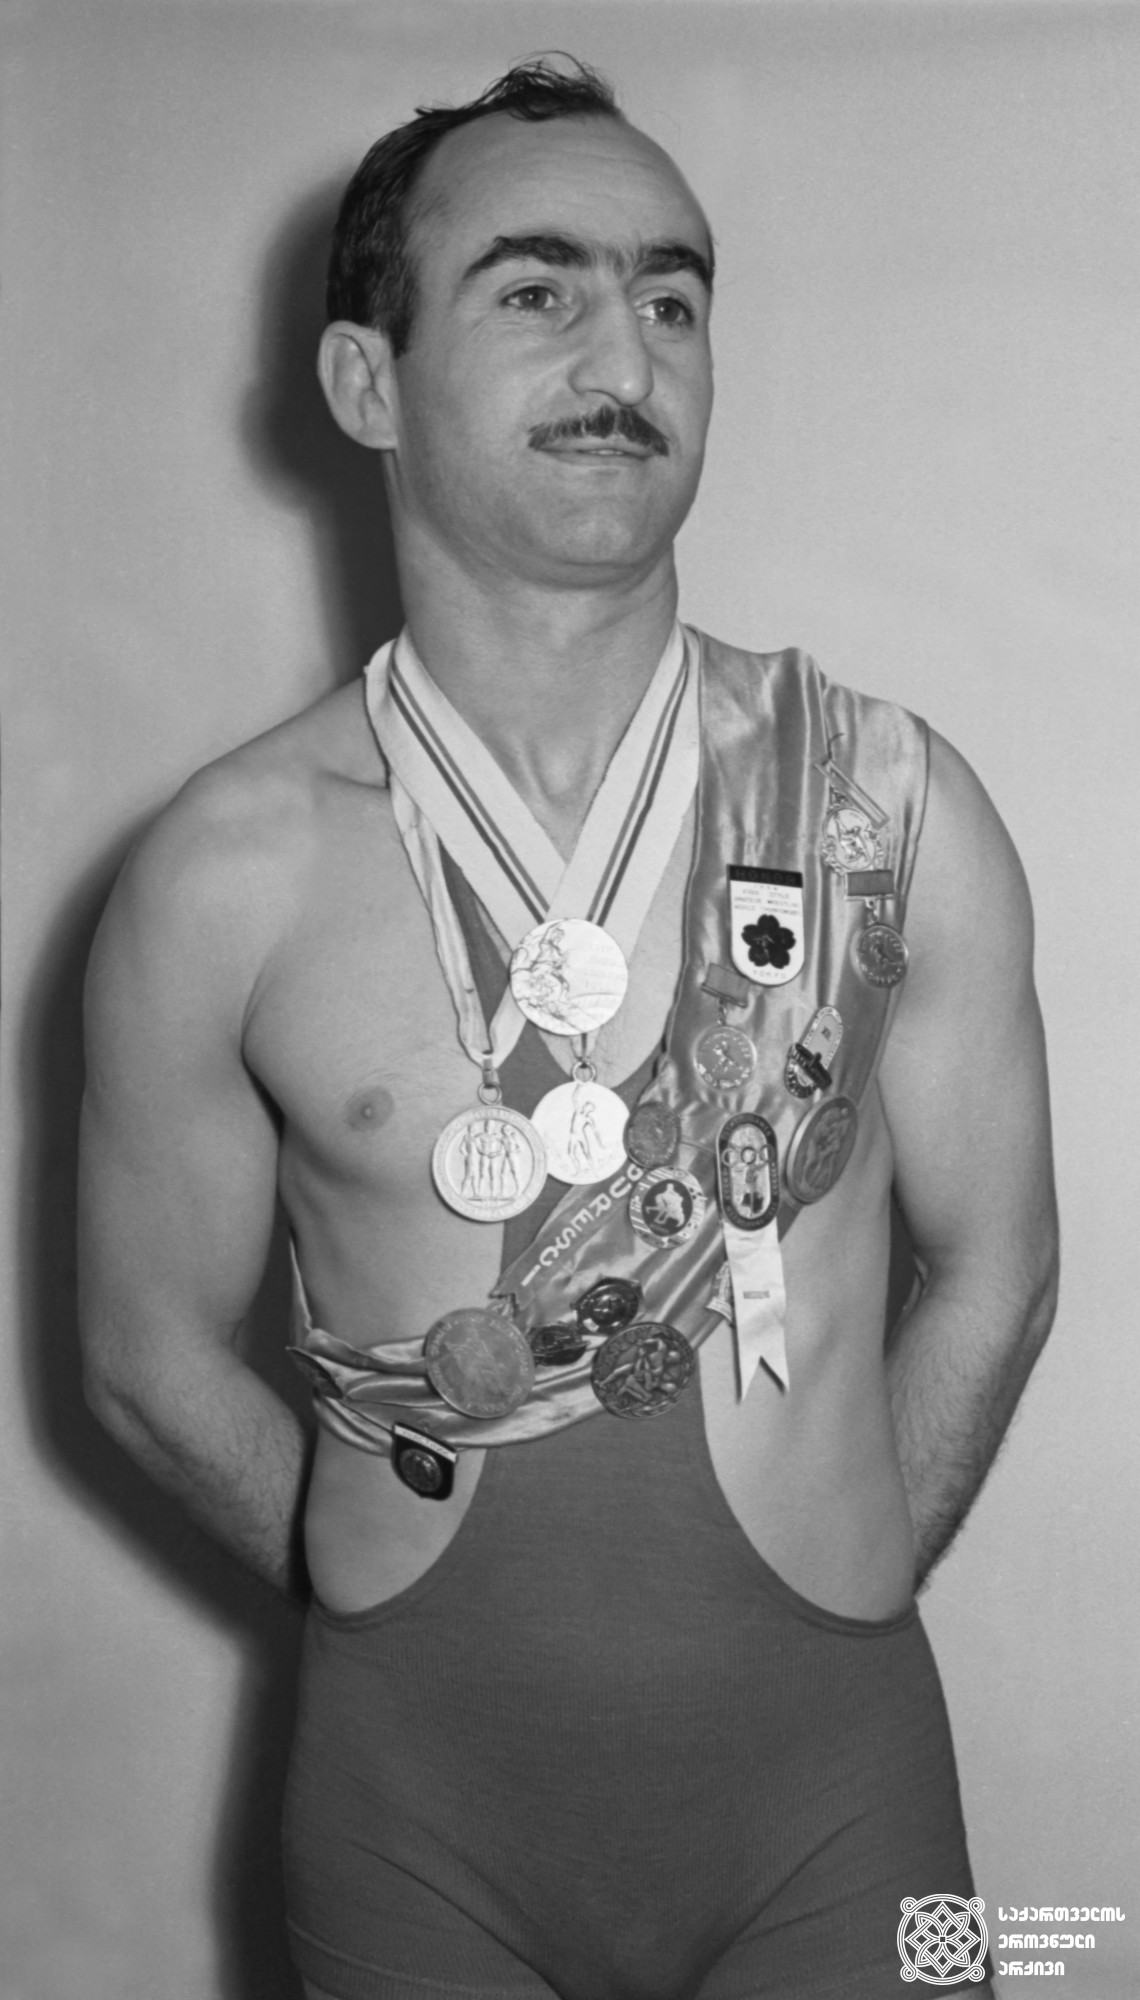 მირიან ცალქალამანიძე. <br>
1959 წელი. <br>
XVI ოლიმპიური თამაშების ჩემპიონი თავისუფალ ჭიდაობაში (1956 წელი, მელბურნი). <br>
Mirian Tsalkalamanidze. <br>
1959. <br>
Champion of the XVI Olympic Games in Wrestling Freestyle (1956, Melbourne).